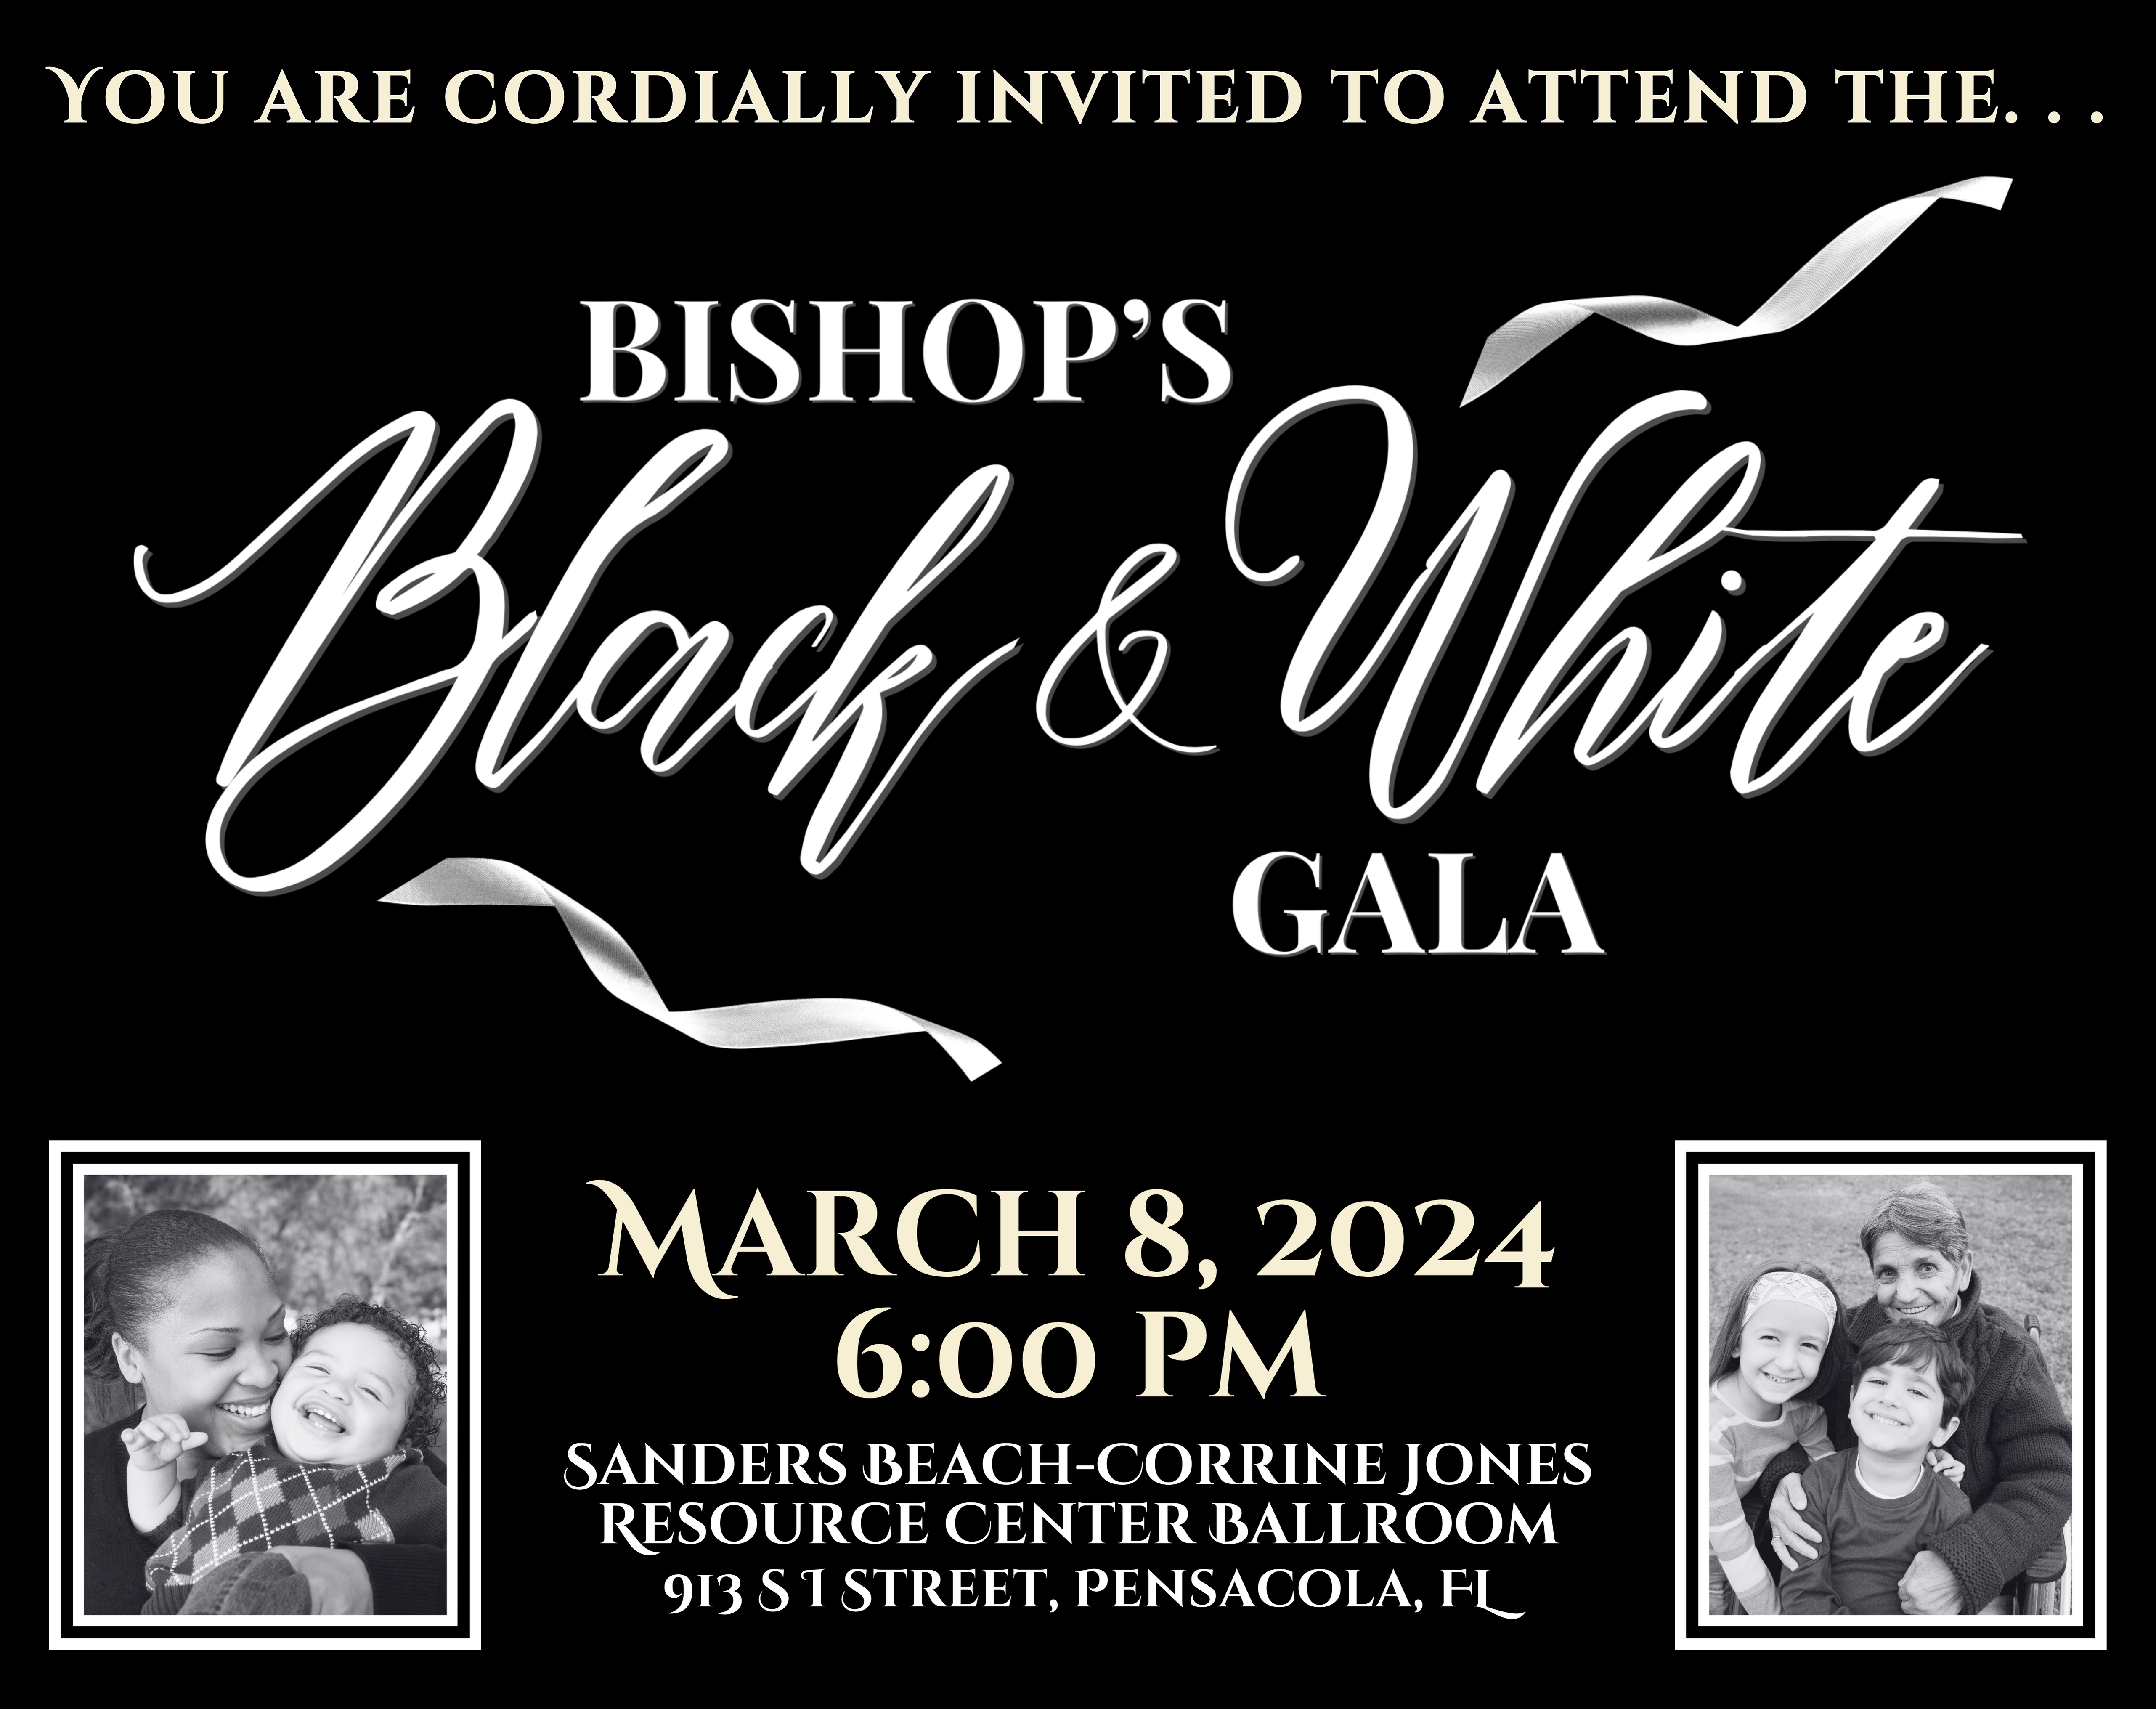 Bishop's B&W Gala Webpage (1640 x 1300 px)